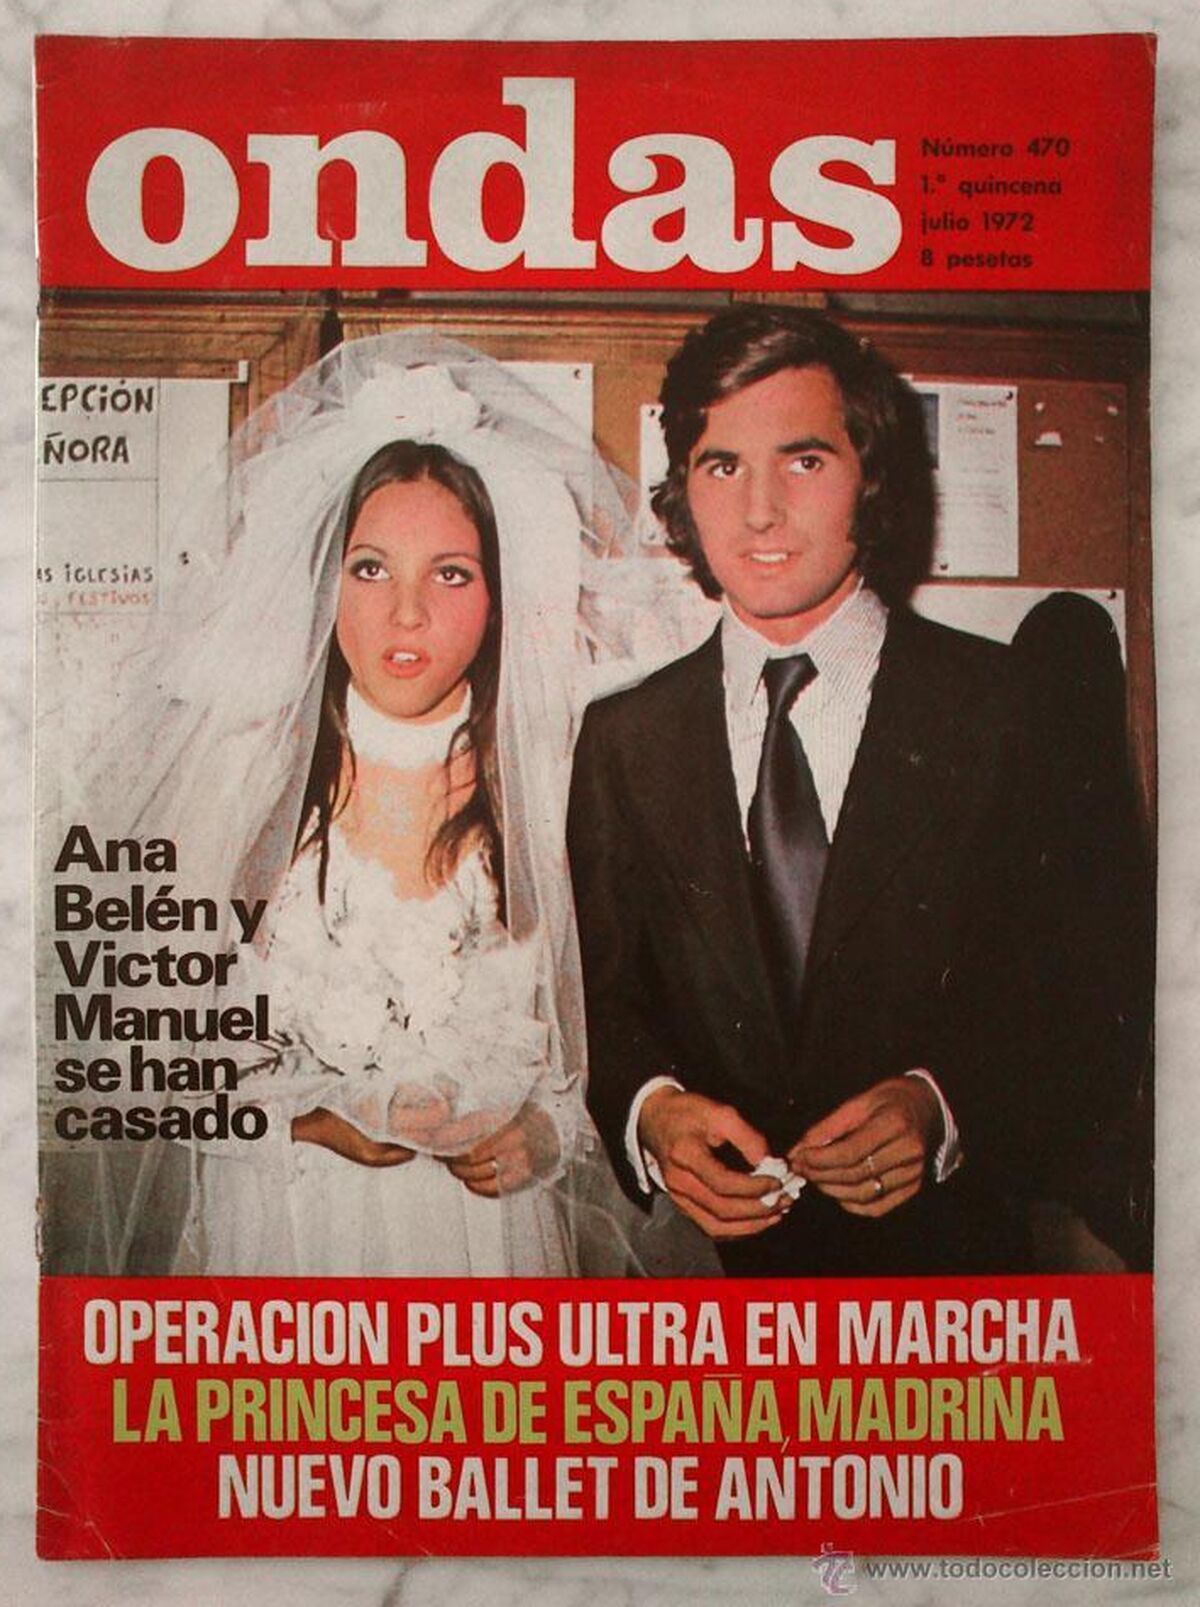 Copertina di una rivista dell'epoca con immagini del matrimonio di Ana Belén e Victor Manuel.